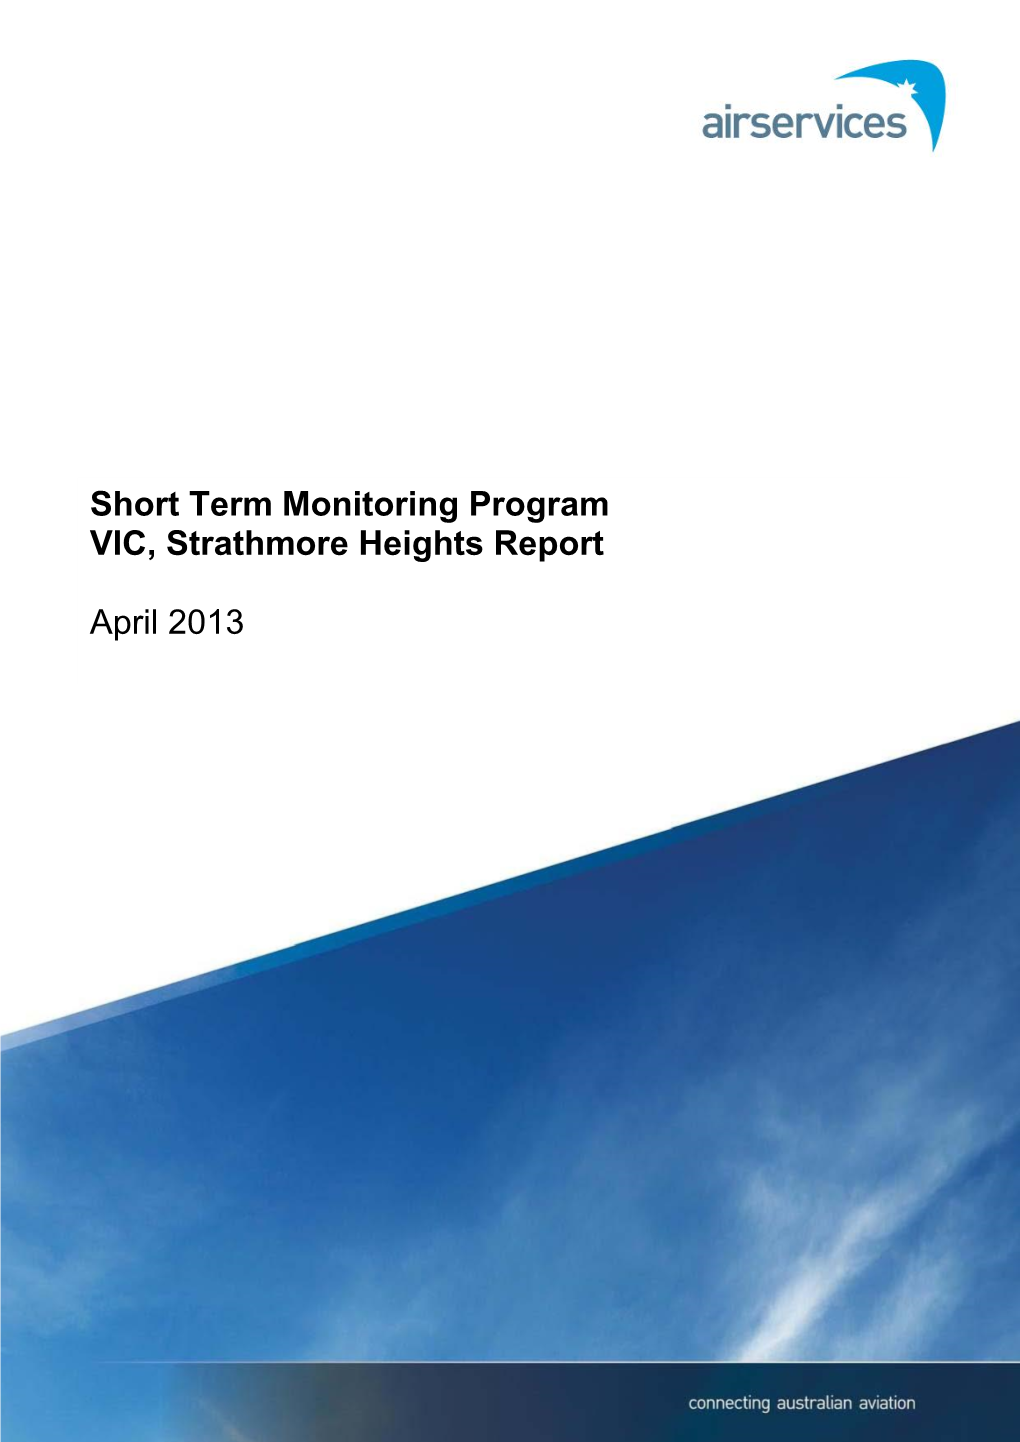 Short Term Monitoring Program Strathmore